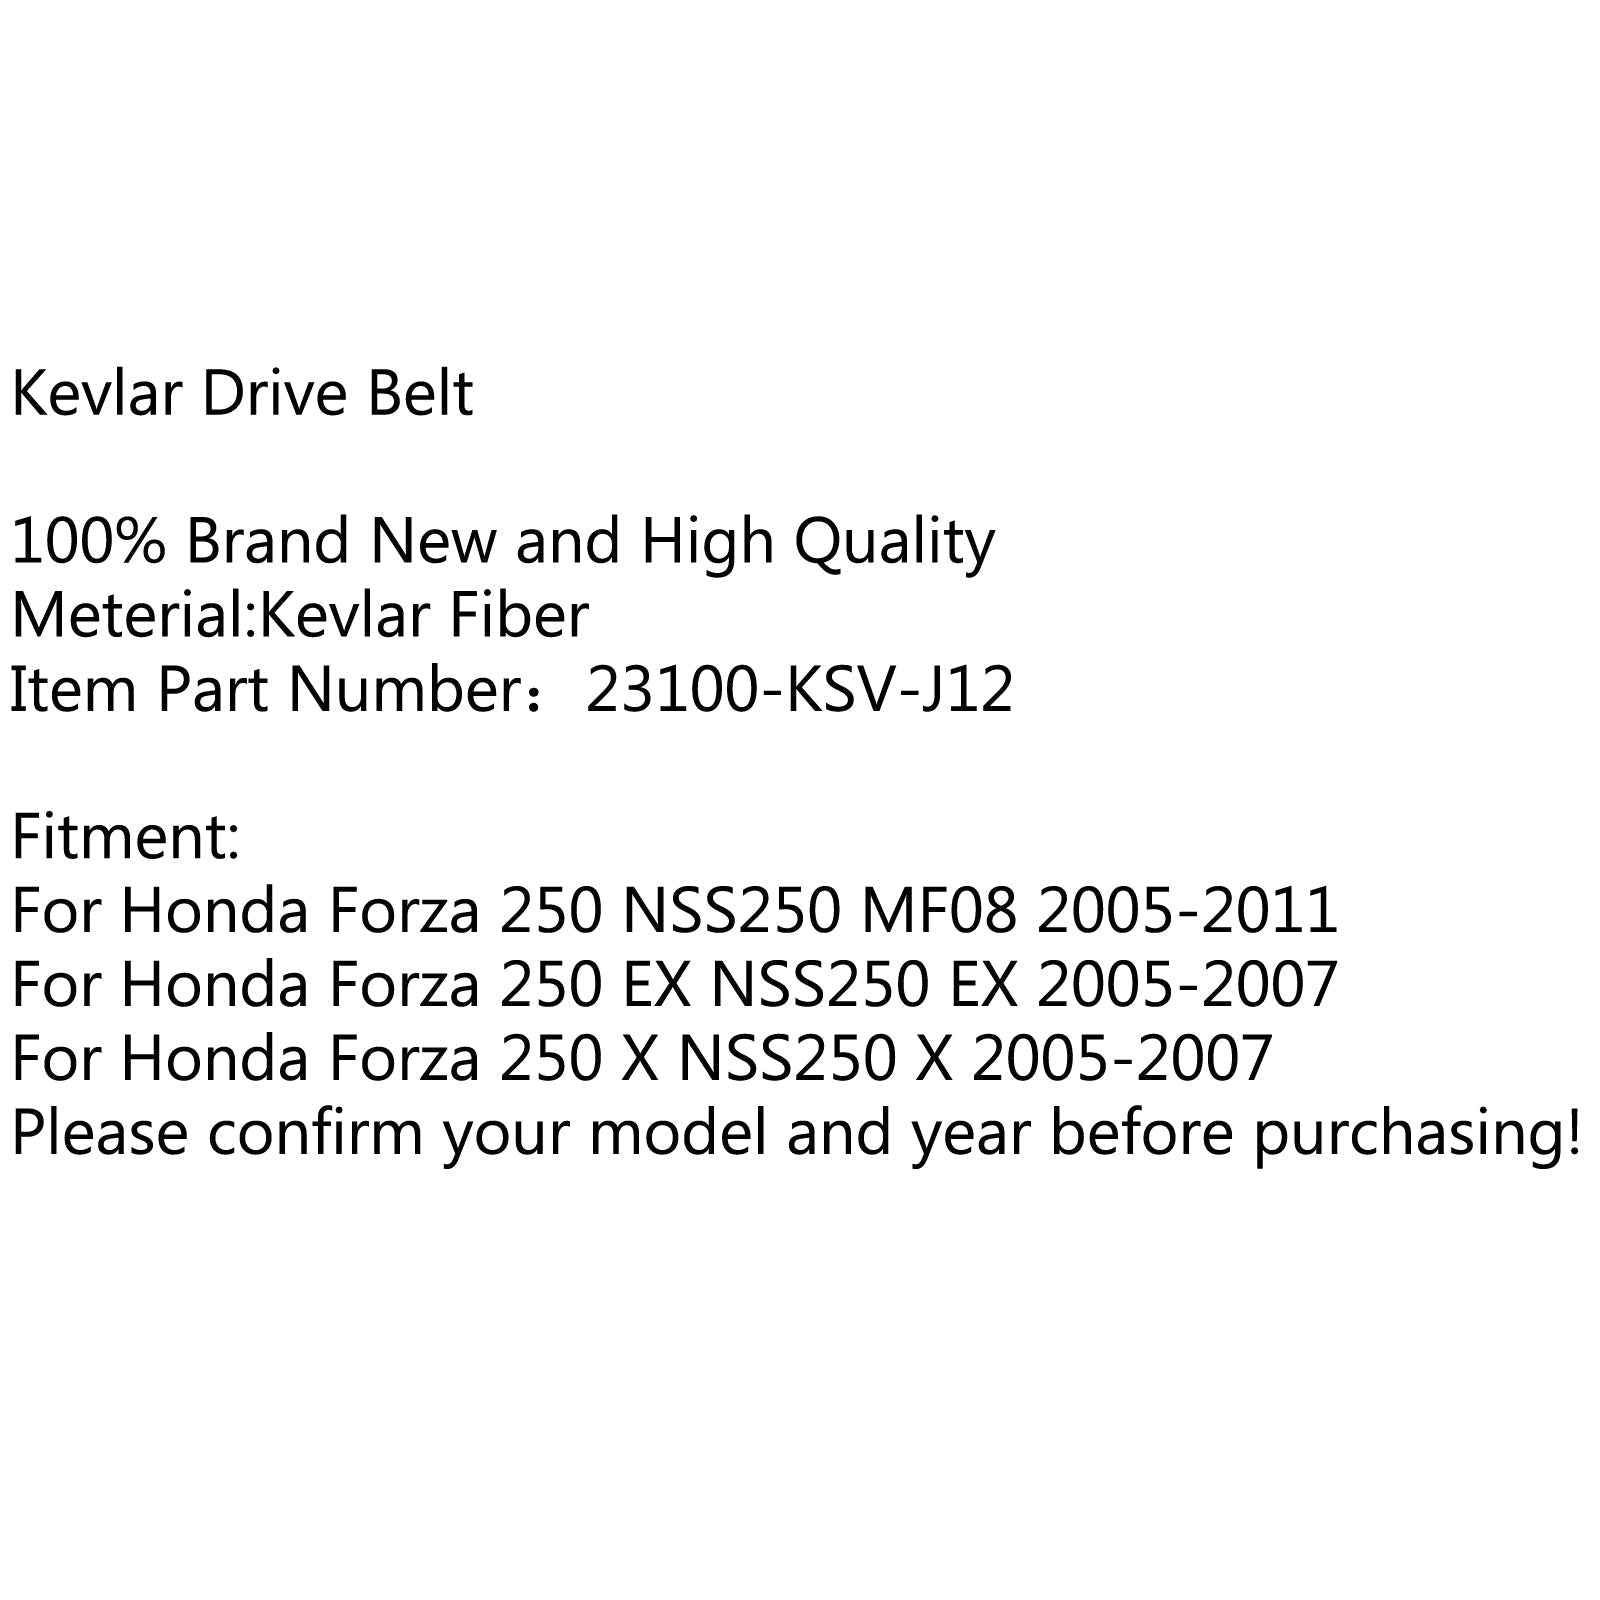 Courroie d'entraînement de qualité supérieure pour Honda Forza 250 NSS250 MF08 05-11 et EX NSS250 05-07  Générique